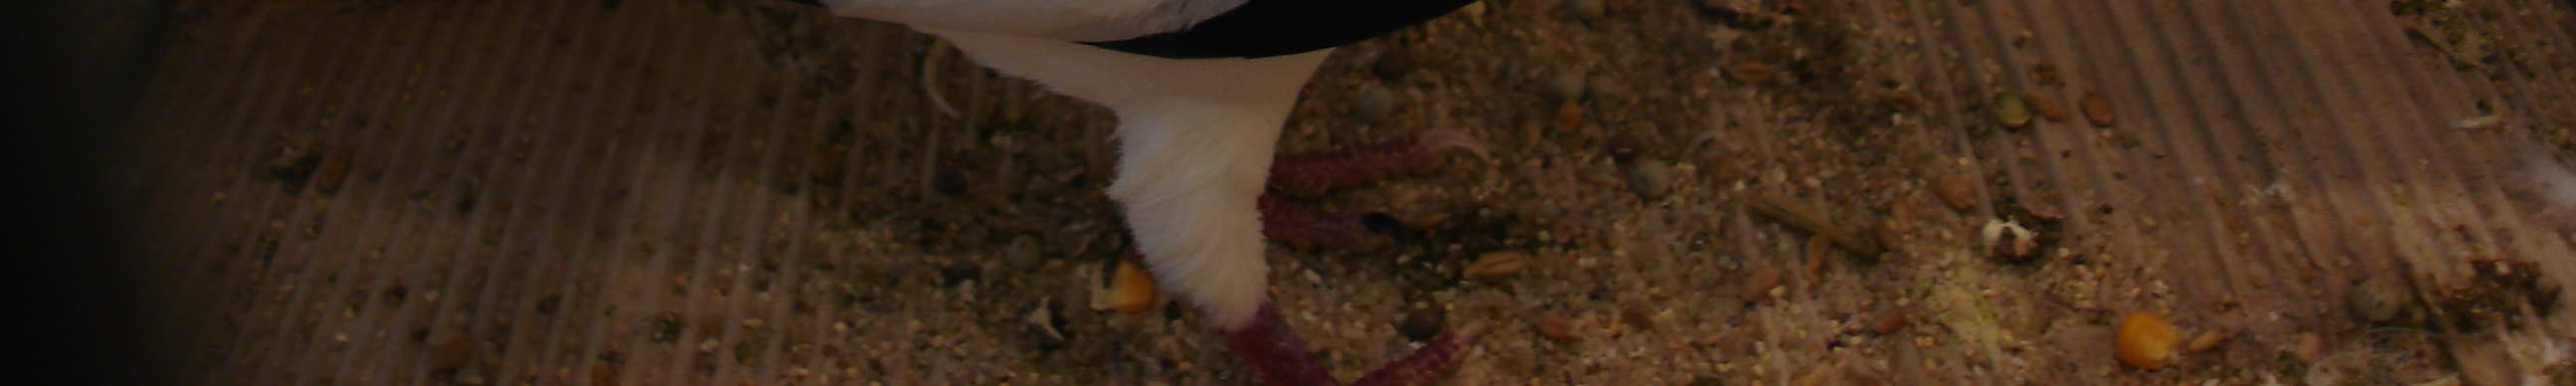 Hodowca gołębi rasowych, drobiu ozdobnego i królików 10(2011) Kolorowe upierzenie turyńskich bocianów występuje w następujących barwach: czarnym, czerwonym, żółtym, niebieskim oraz niebieskopłowym.